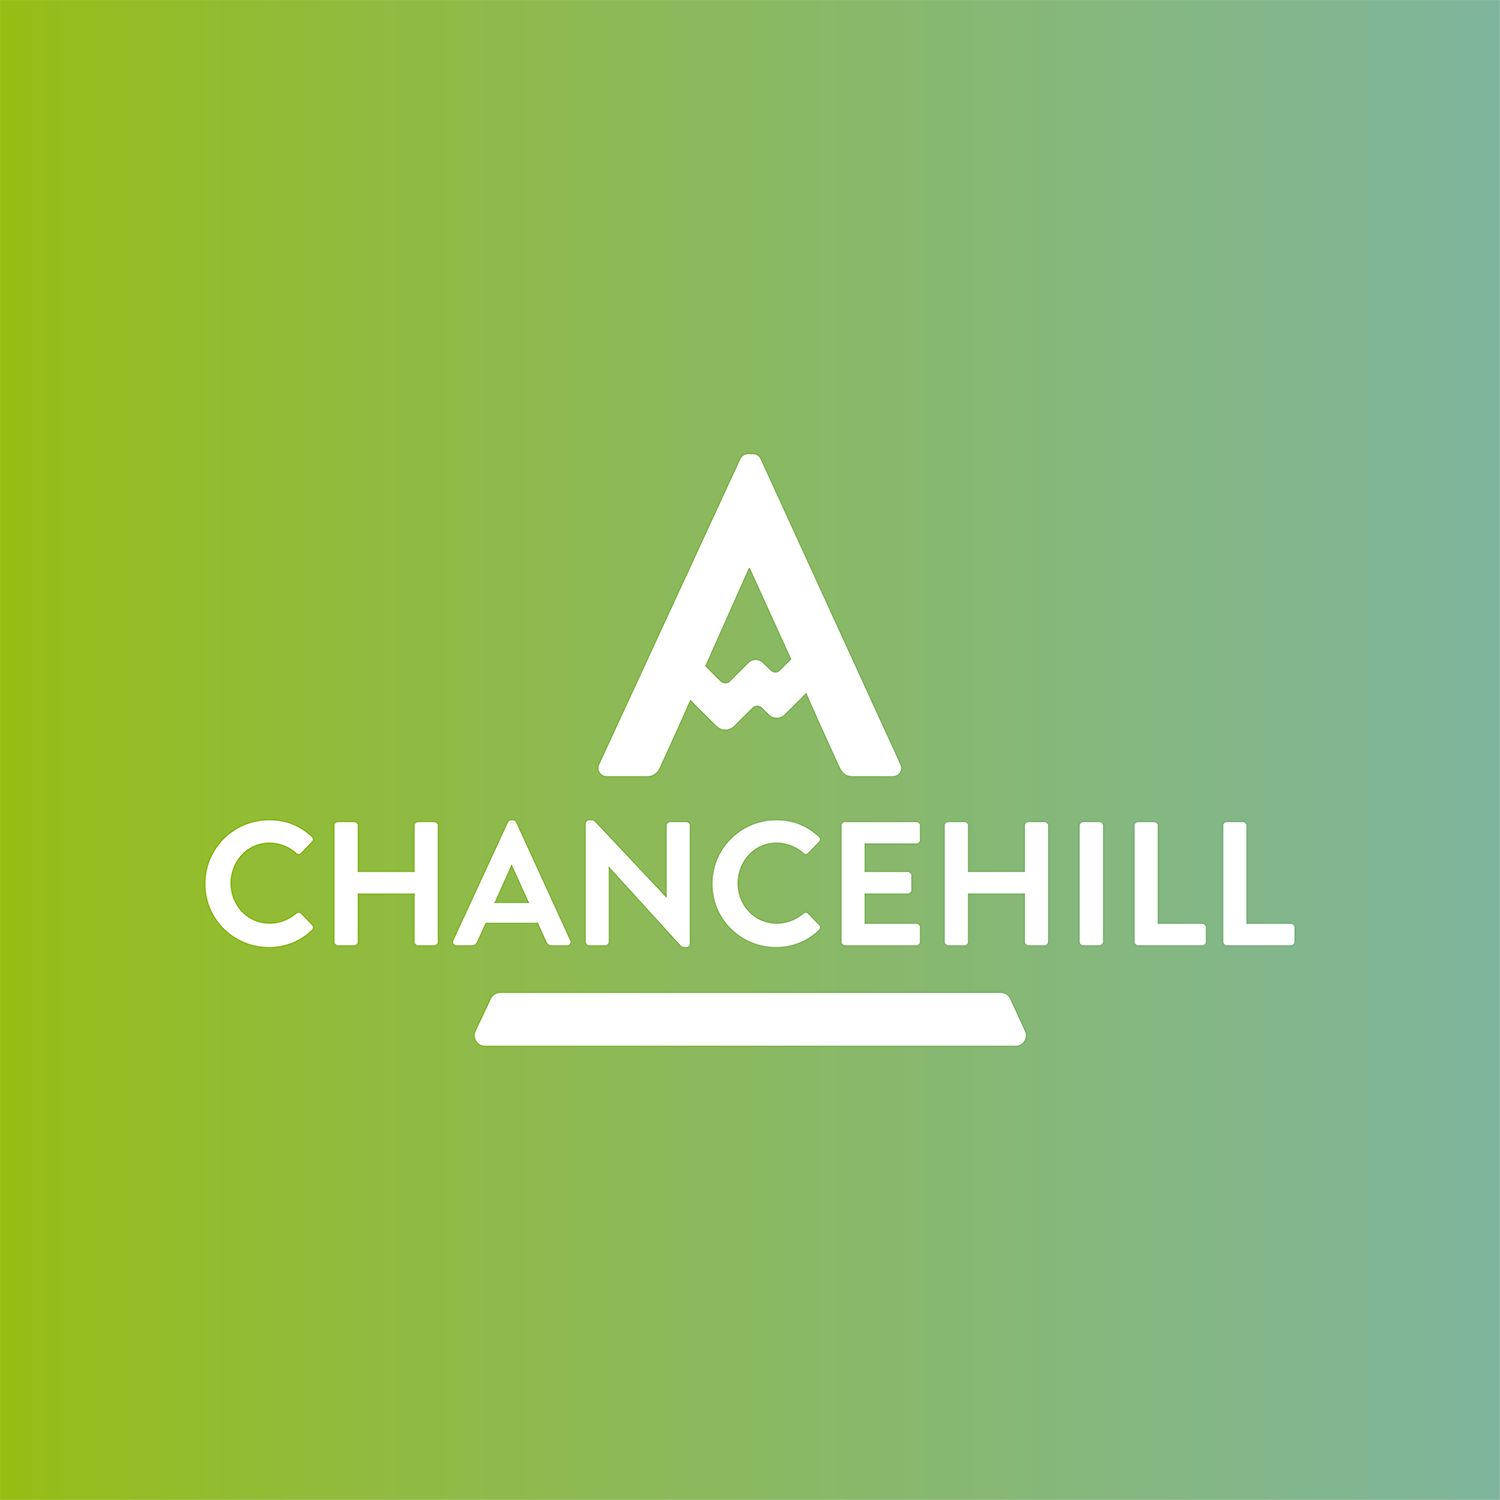 Chance Hill